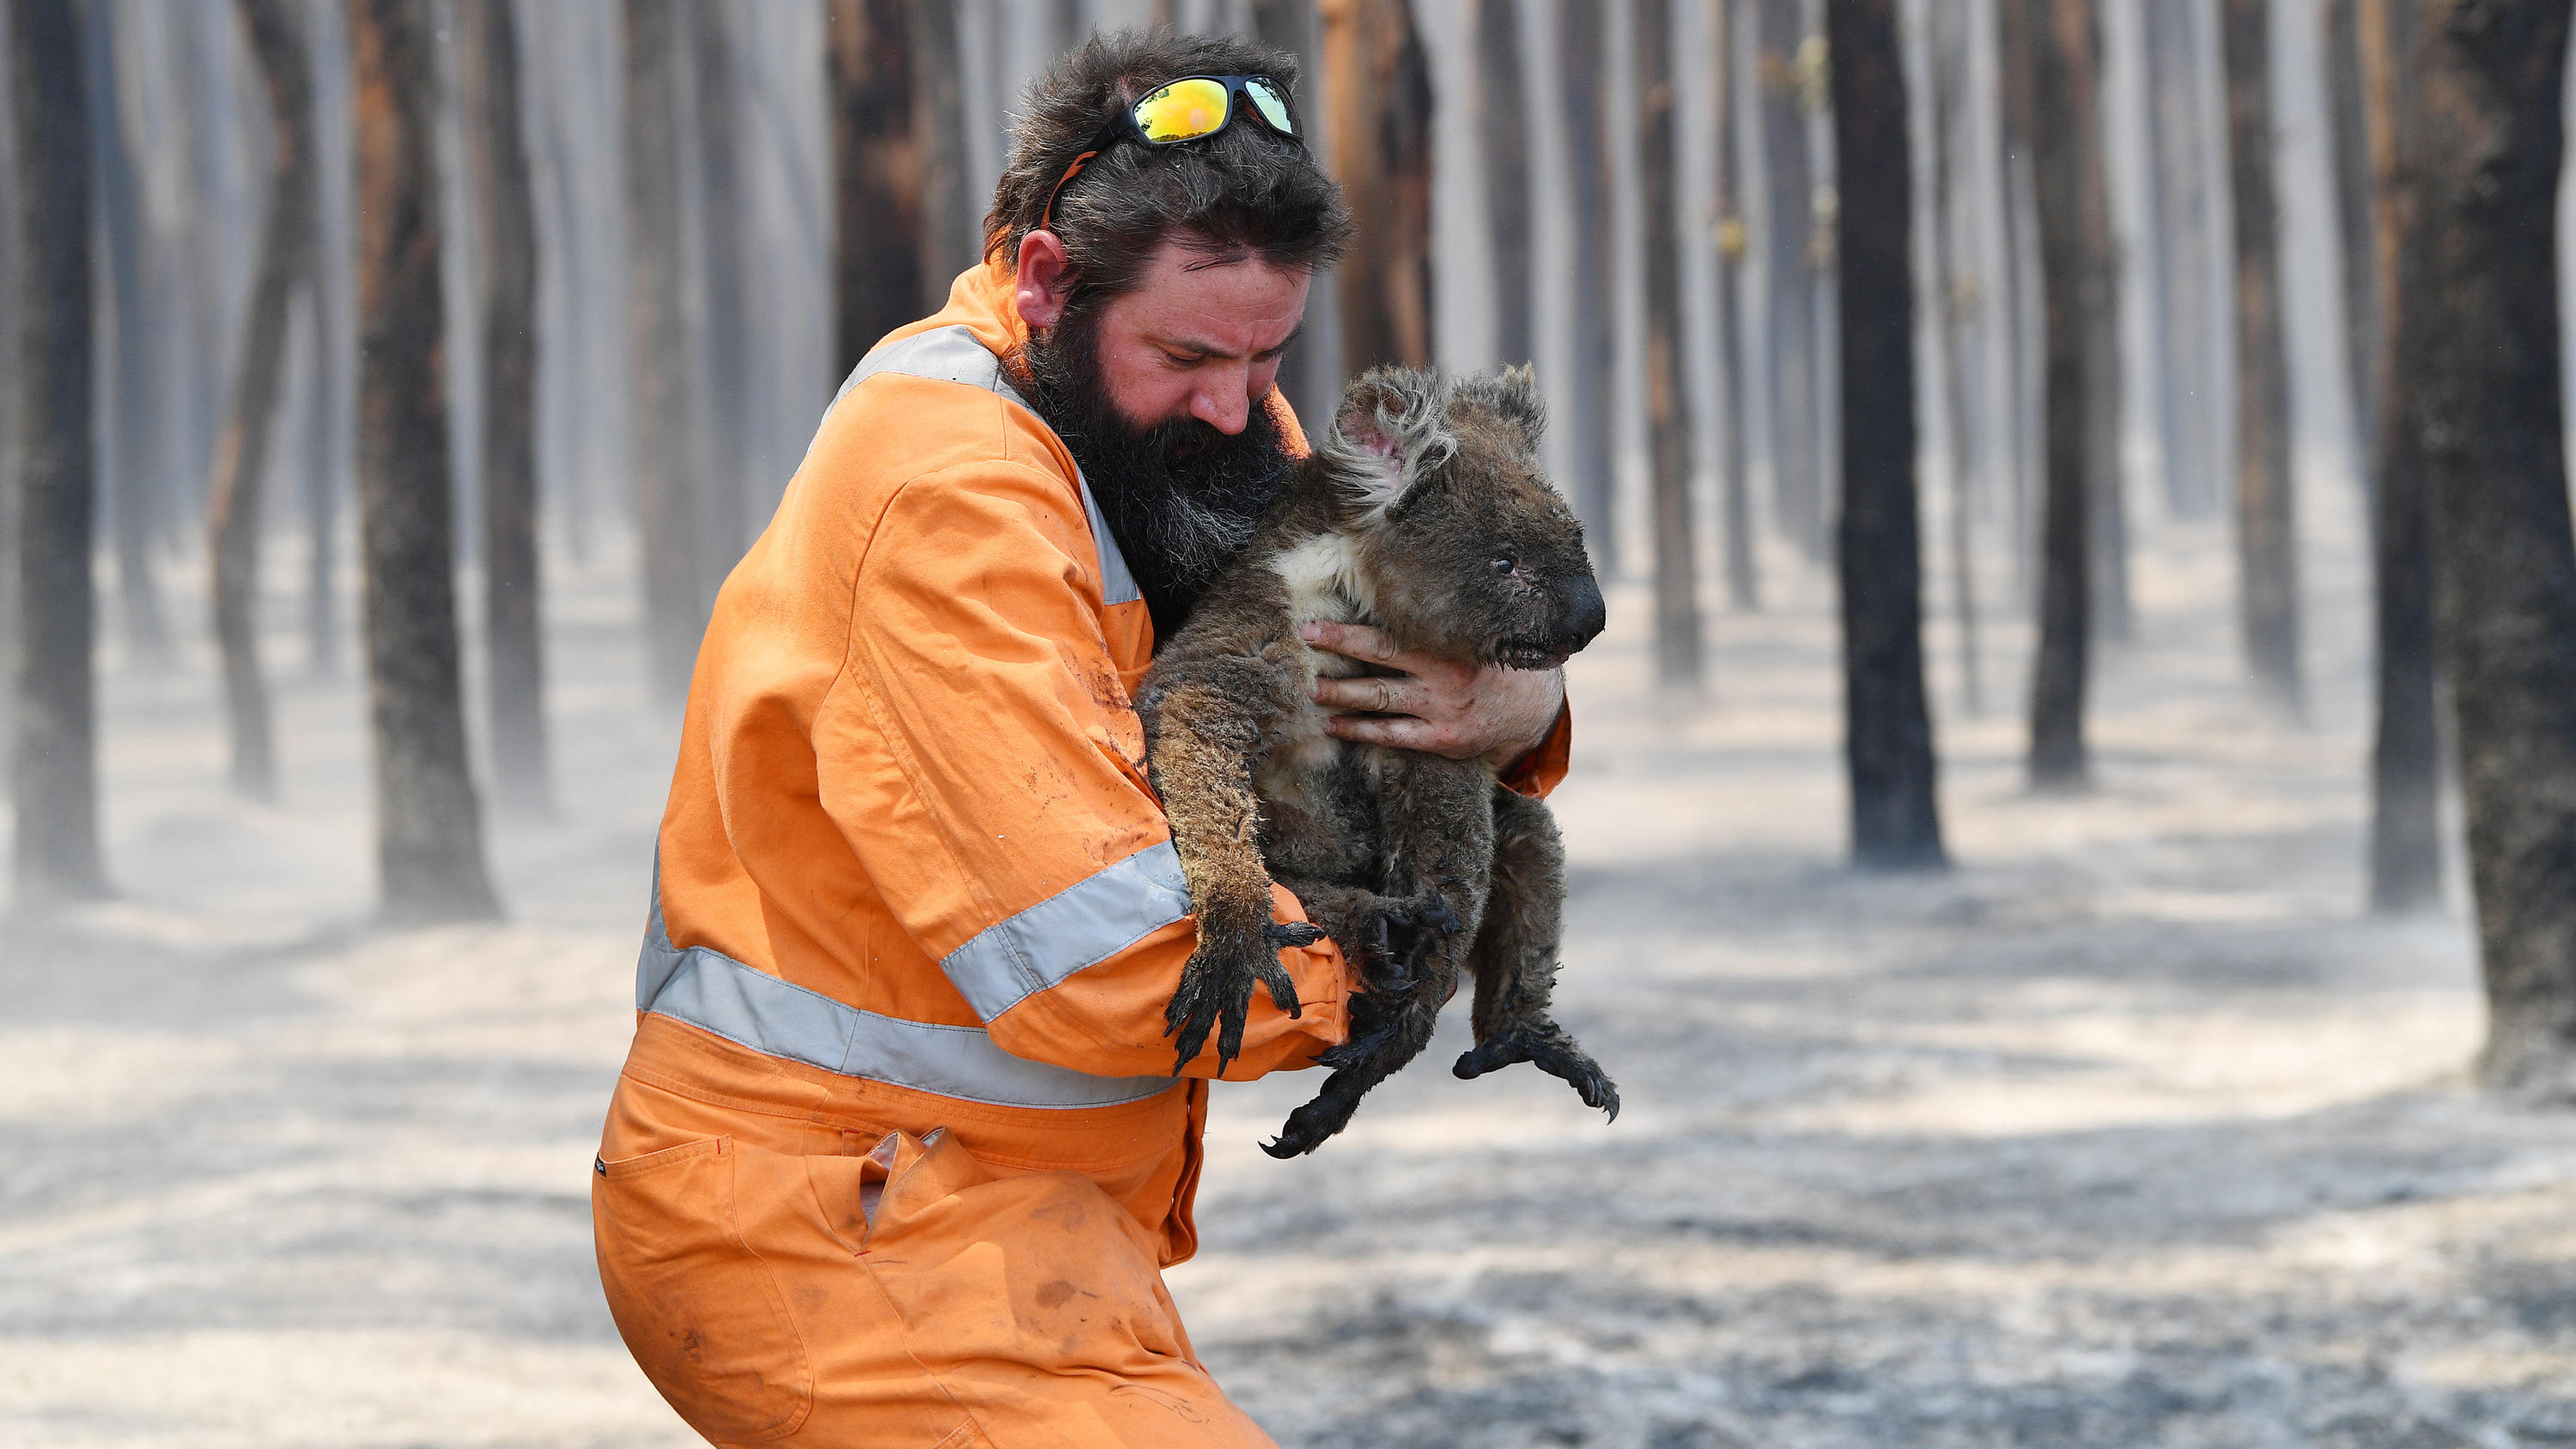 07.01.2020, Australien, Kangaroo Island: Wildtierretter Simon Adamczyk trägt einen Koala aus einem brennenden Wald in der Nähe von Cape Borda auf Kangaroo Island, südwestlich von Adelaide. Auf Australiens drittgrößter Insel haben die Buschfeuer berei